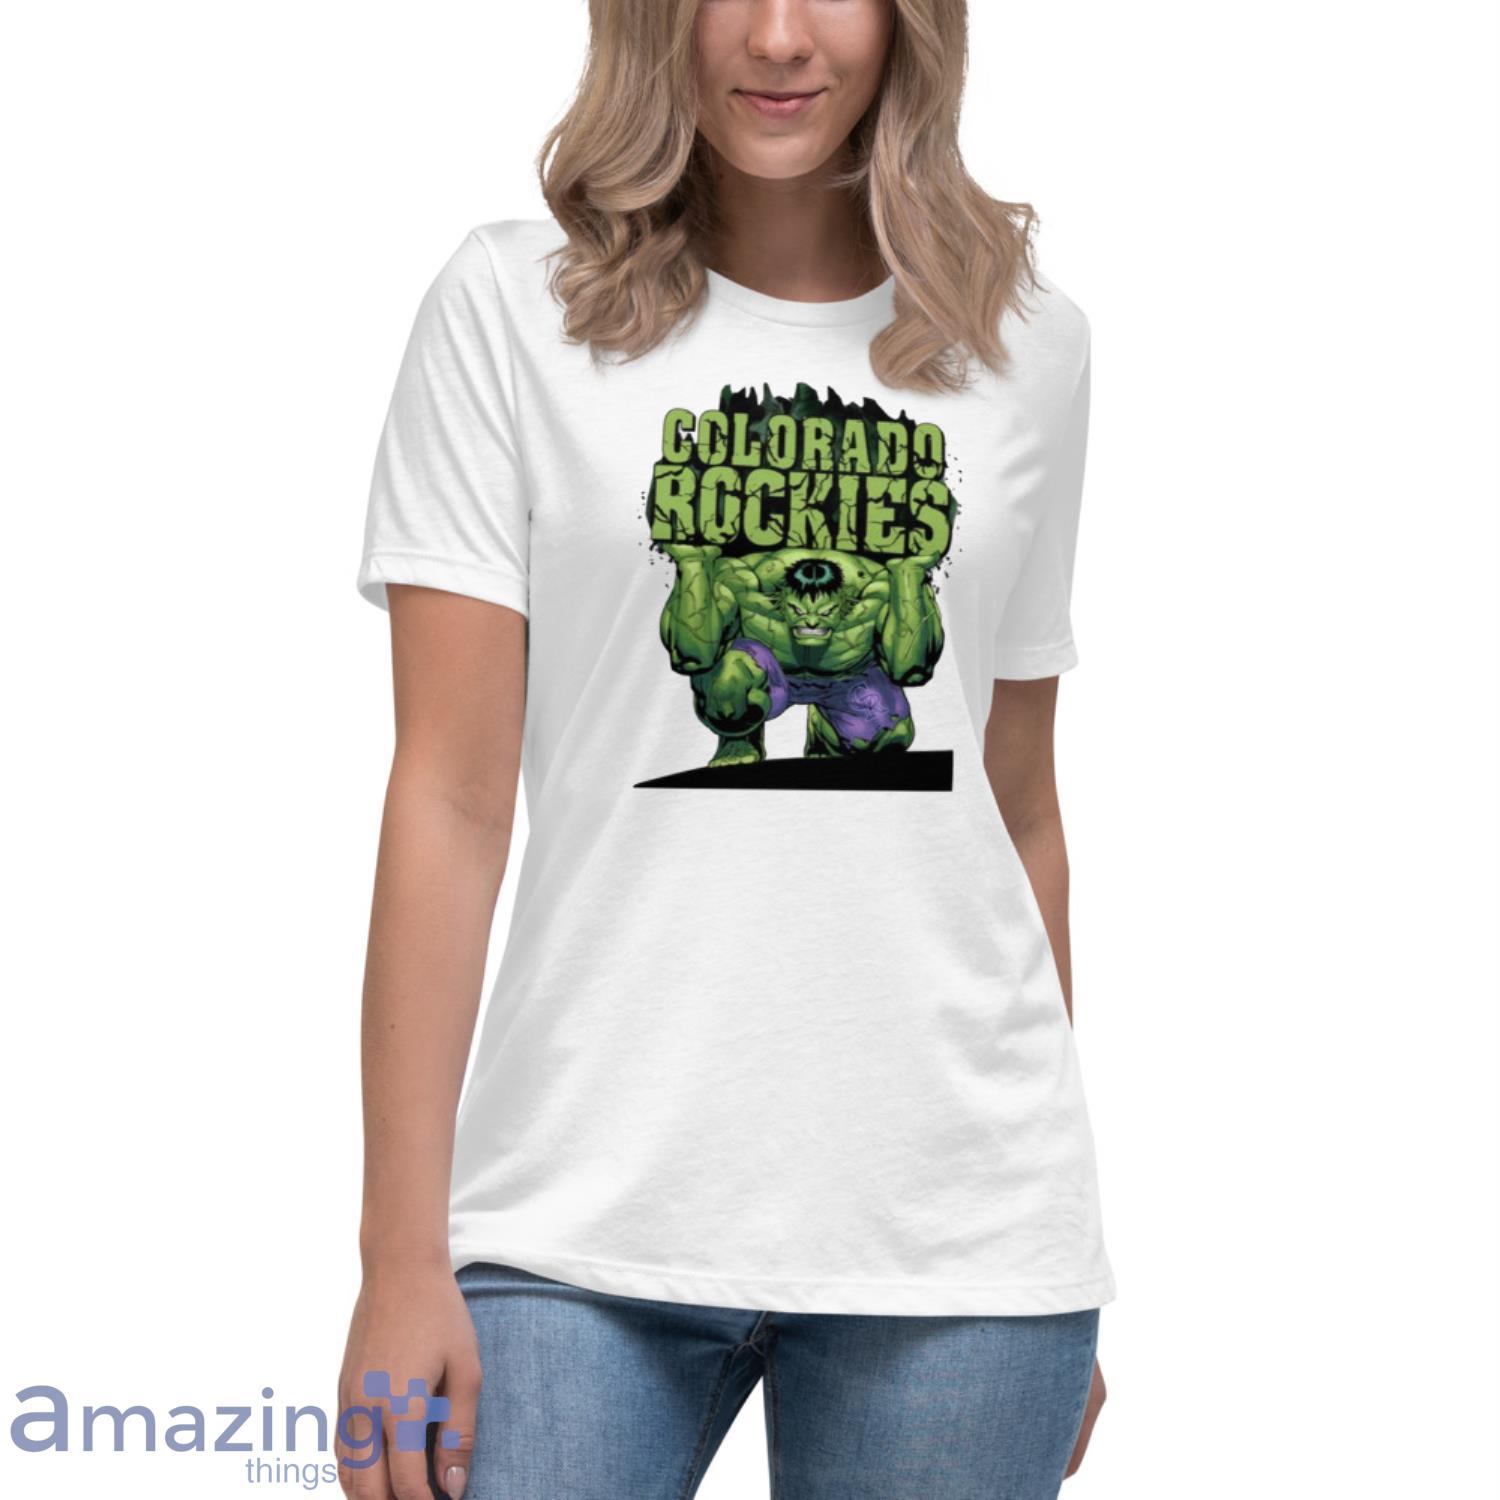 Colorado Rockies T-Shirt, Rockies Shirts, Rockies Baseball Shirts, Tees